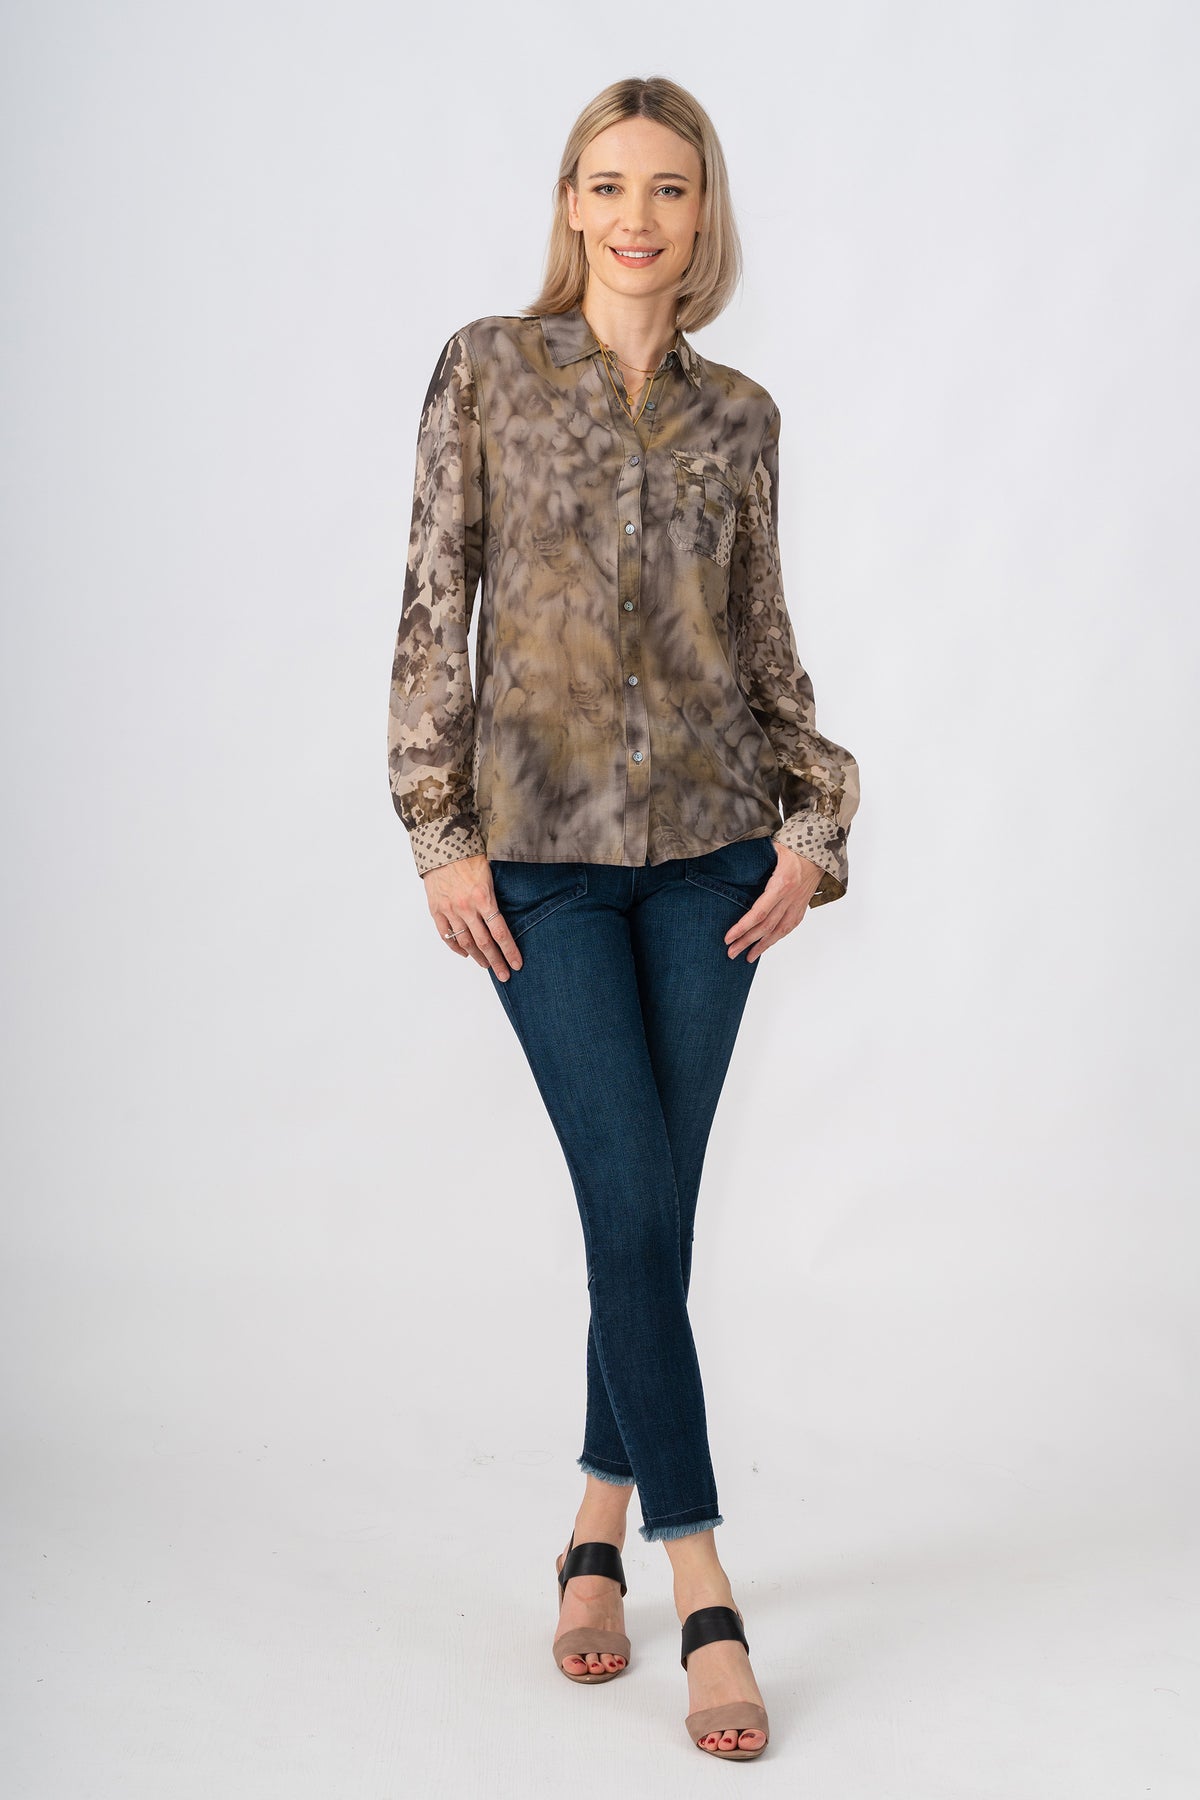 Silk long sleeves blouse in Vintage